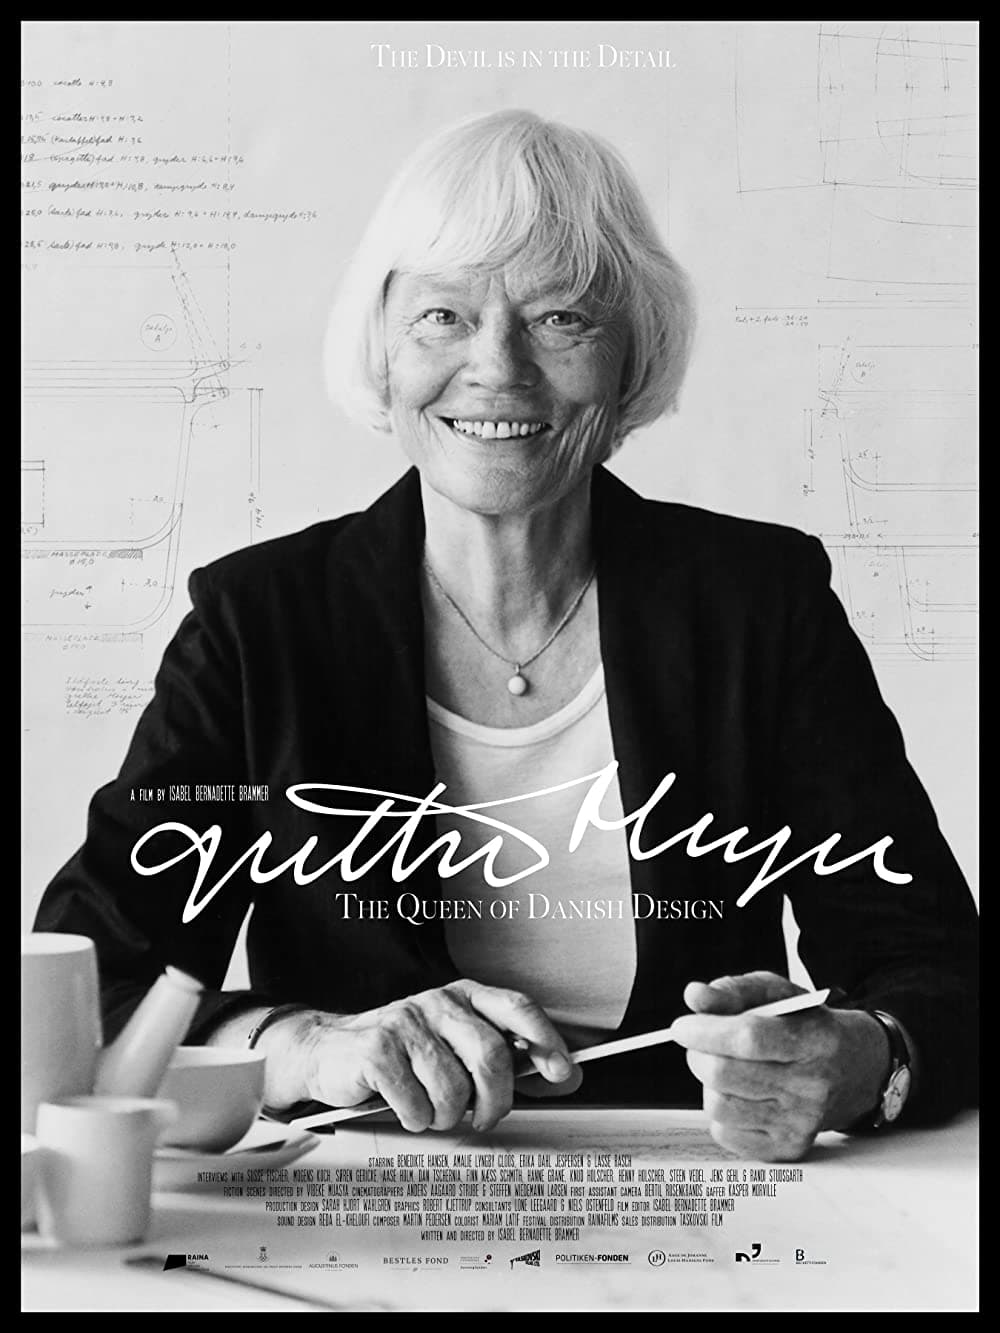 Grethe Meyer – The Queen of Danish Design